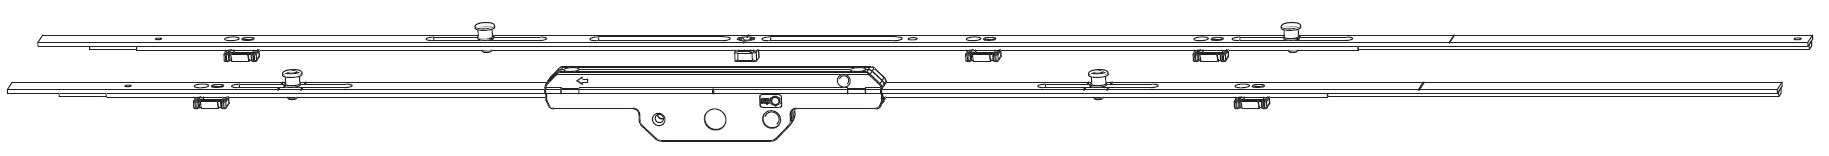 MAICO - Kit Cremonese RAIL-SYSTEMS per anta scorrevole altezza maniglia fissa prolungabile senza dss - gr / dim. 07 - entrata 17,5 - alt. man. 950 - lbb/hbb 2101 - 2300